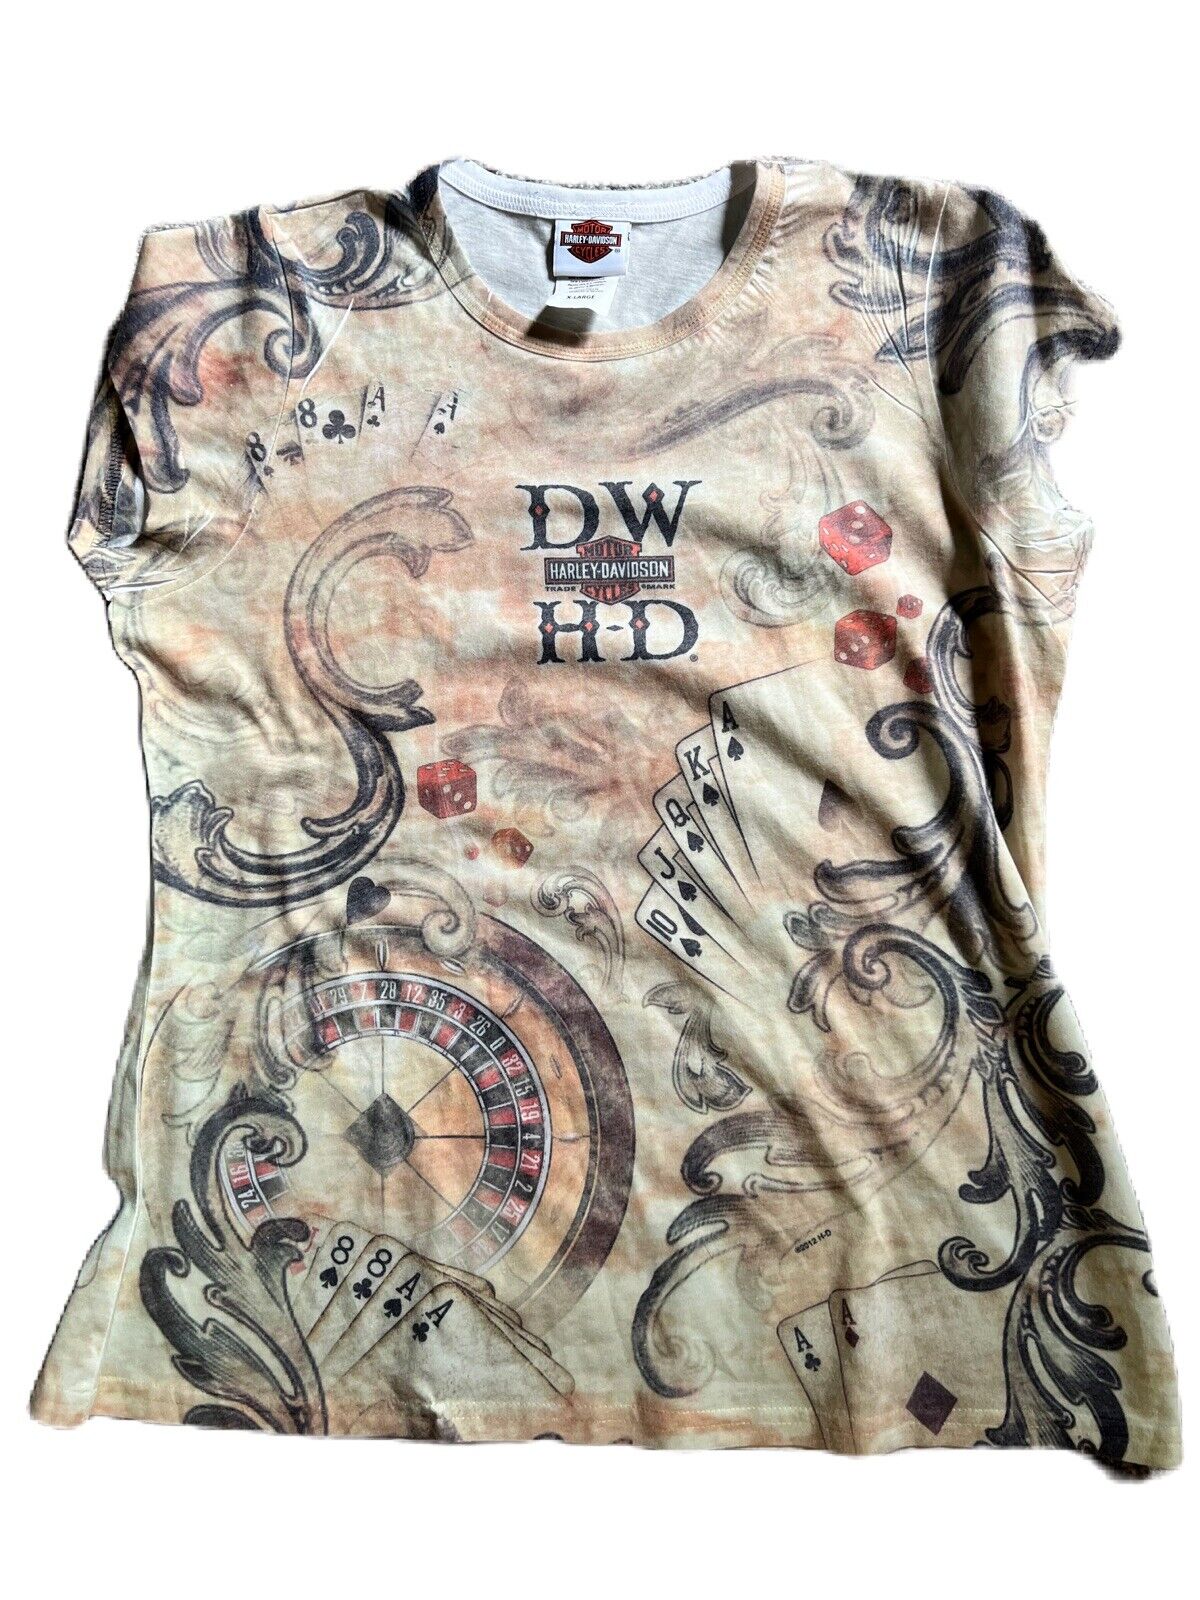 Harley Davidson Women’s Tee Shirt Size Xl Deadwood SD Made in USA